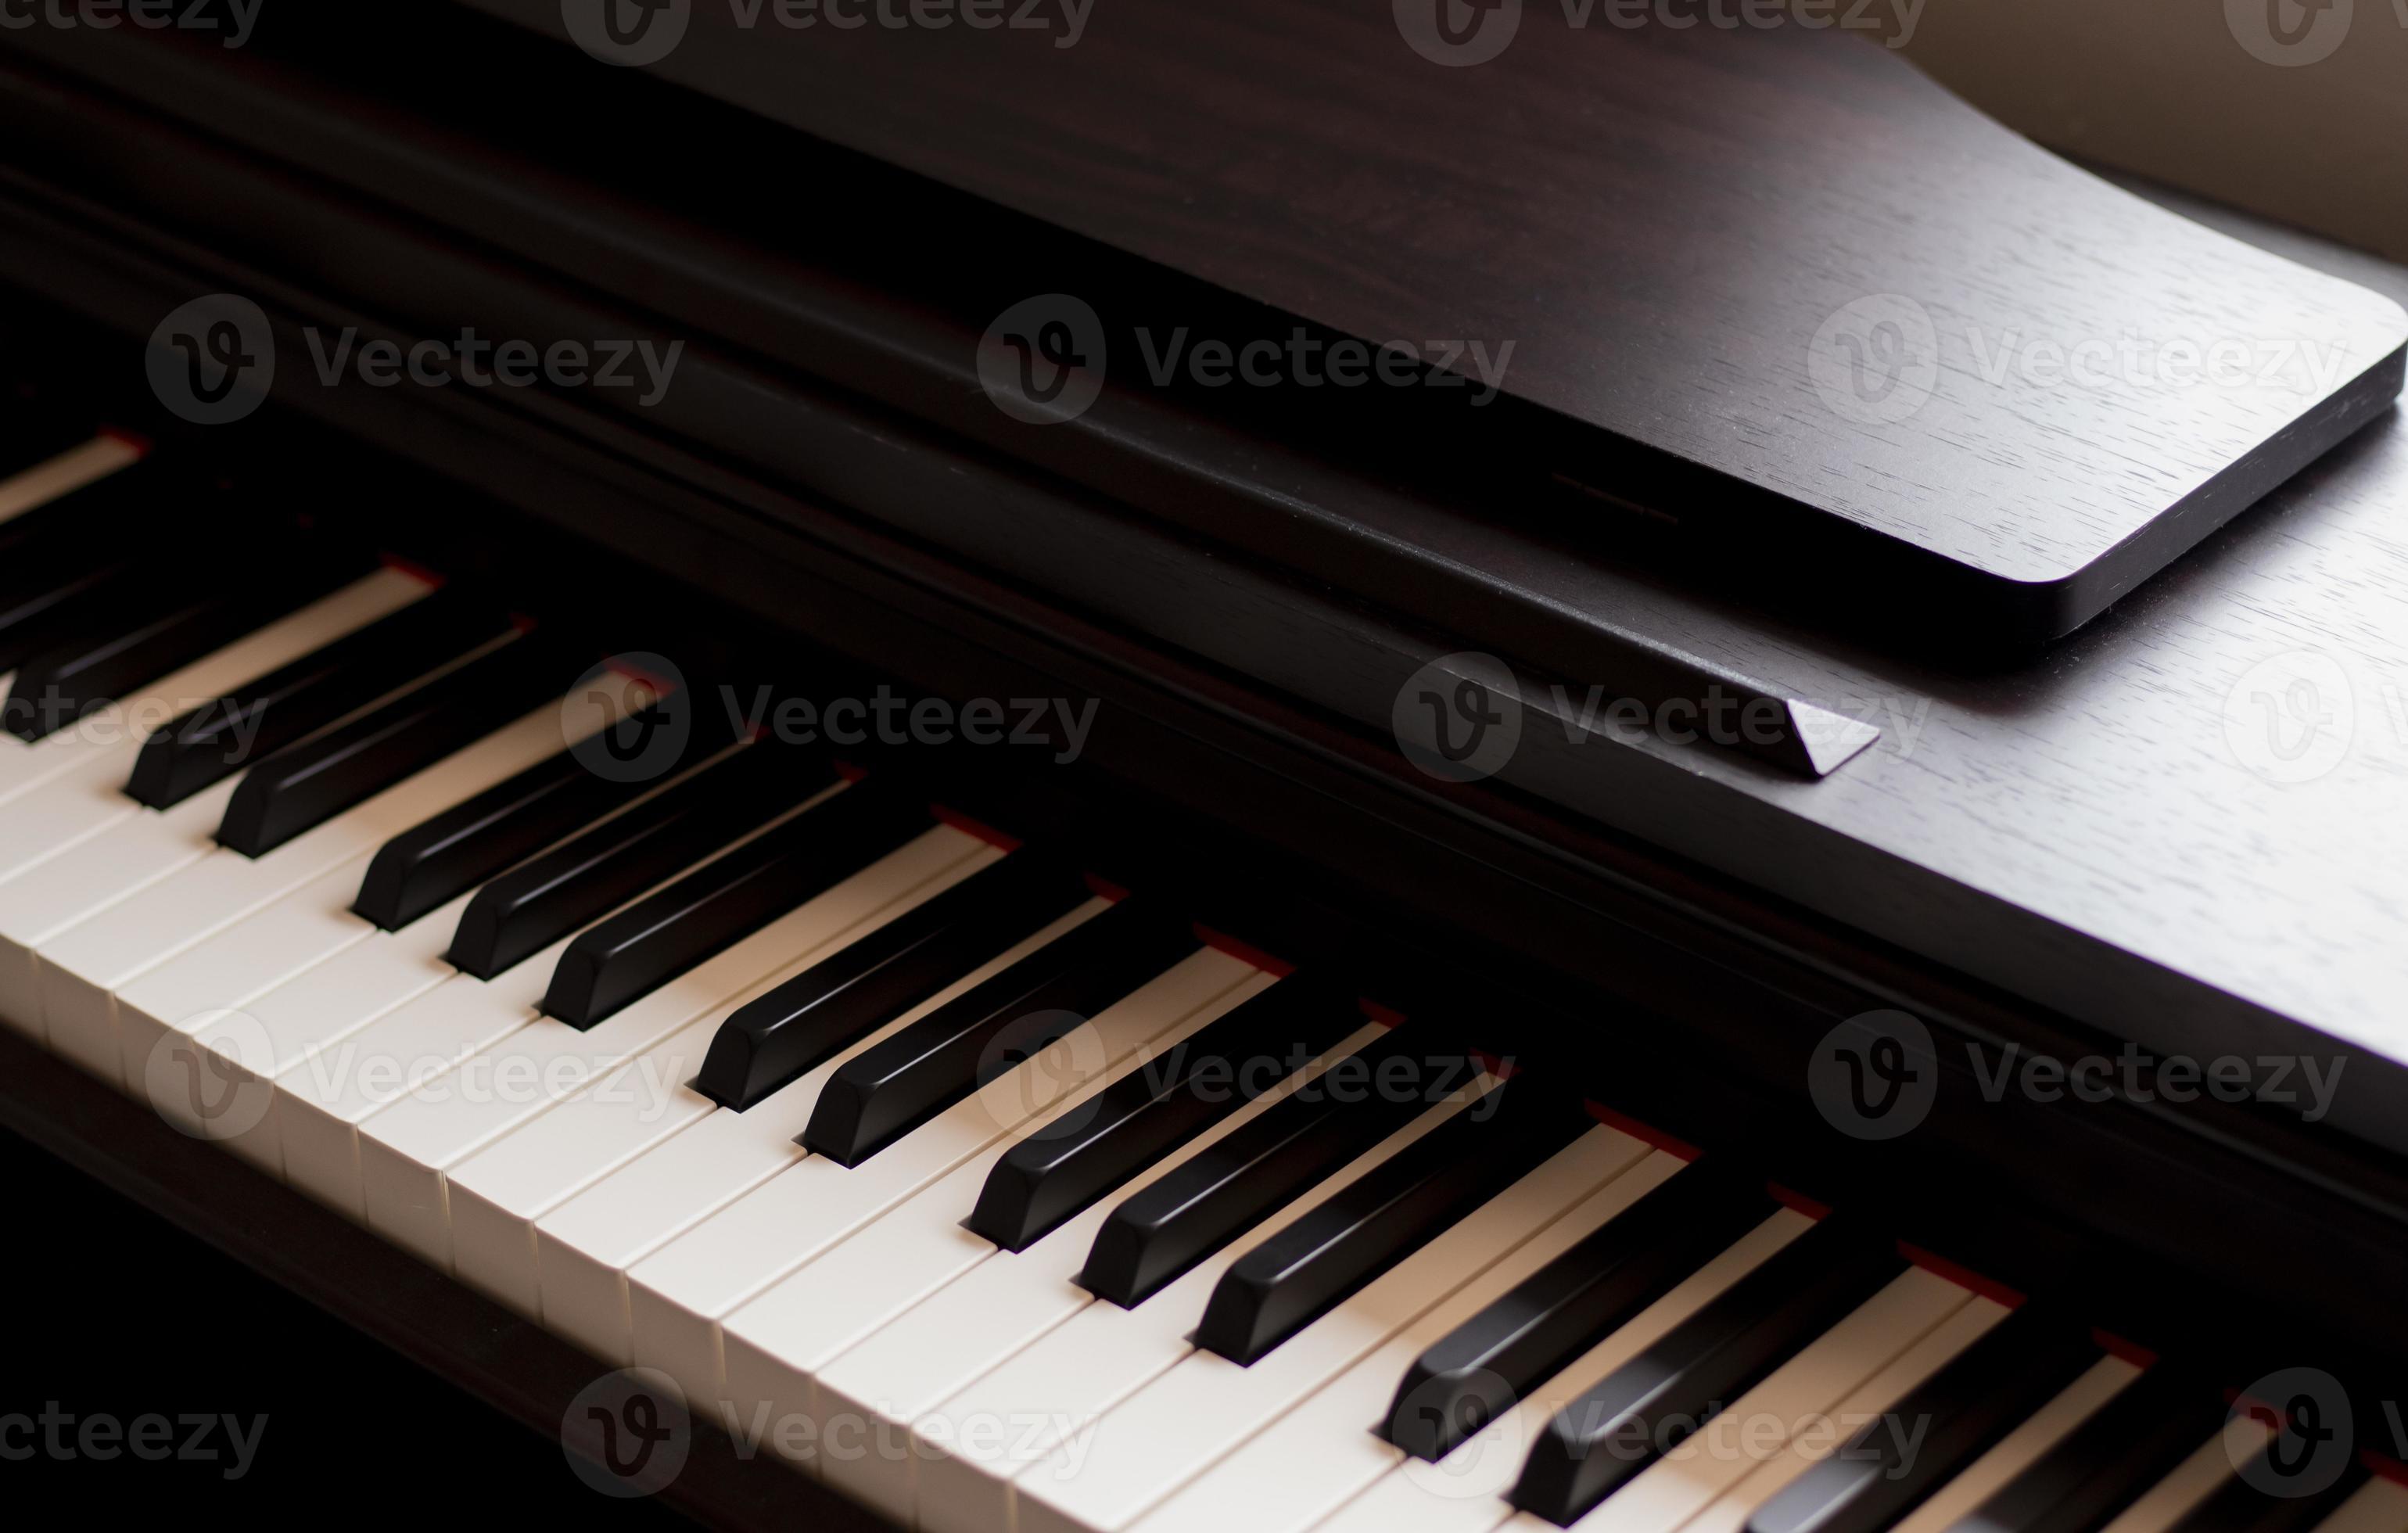 pianoforte e tastiera di pianoforte elettronico con sfondi neri. primo  piano dei tasti del pianoforte in bianco e nero, copia spazio, banner  4575773 Stock Photo su Vecteezy